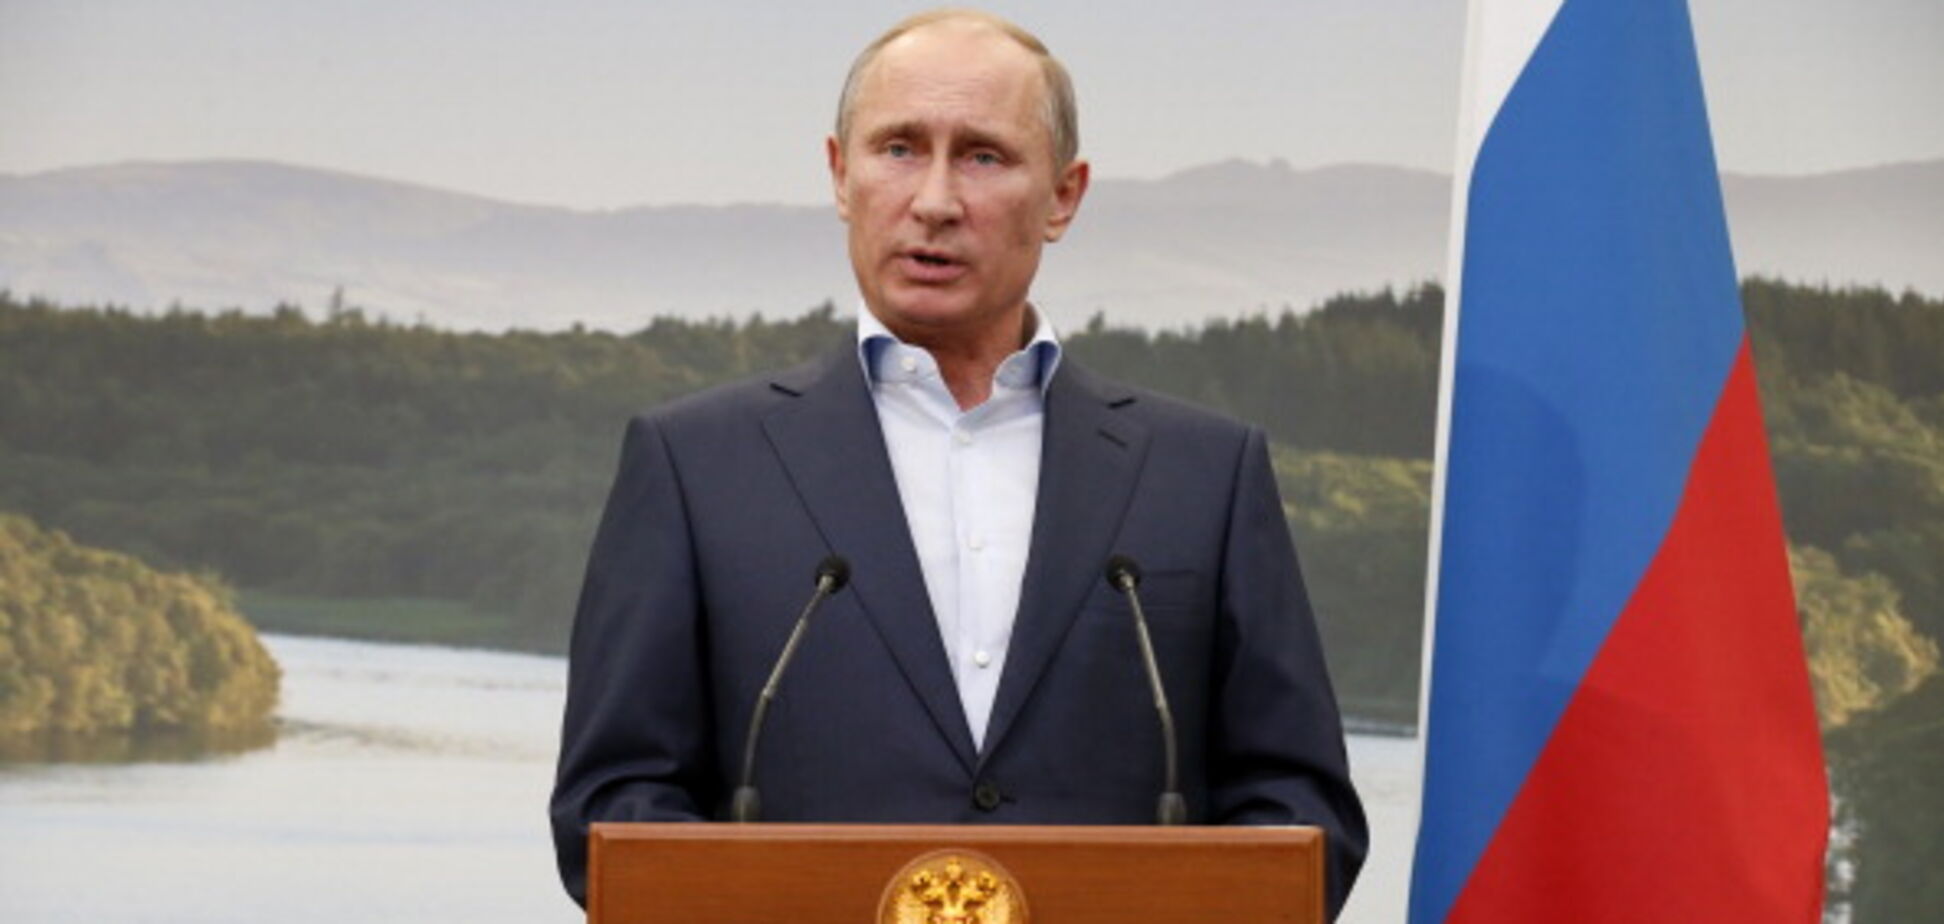 Тянет на дно весь мир: дипломат рассказал, как Россия 'идет в никуда'